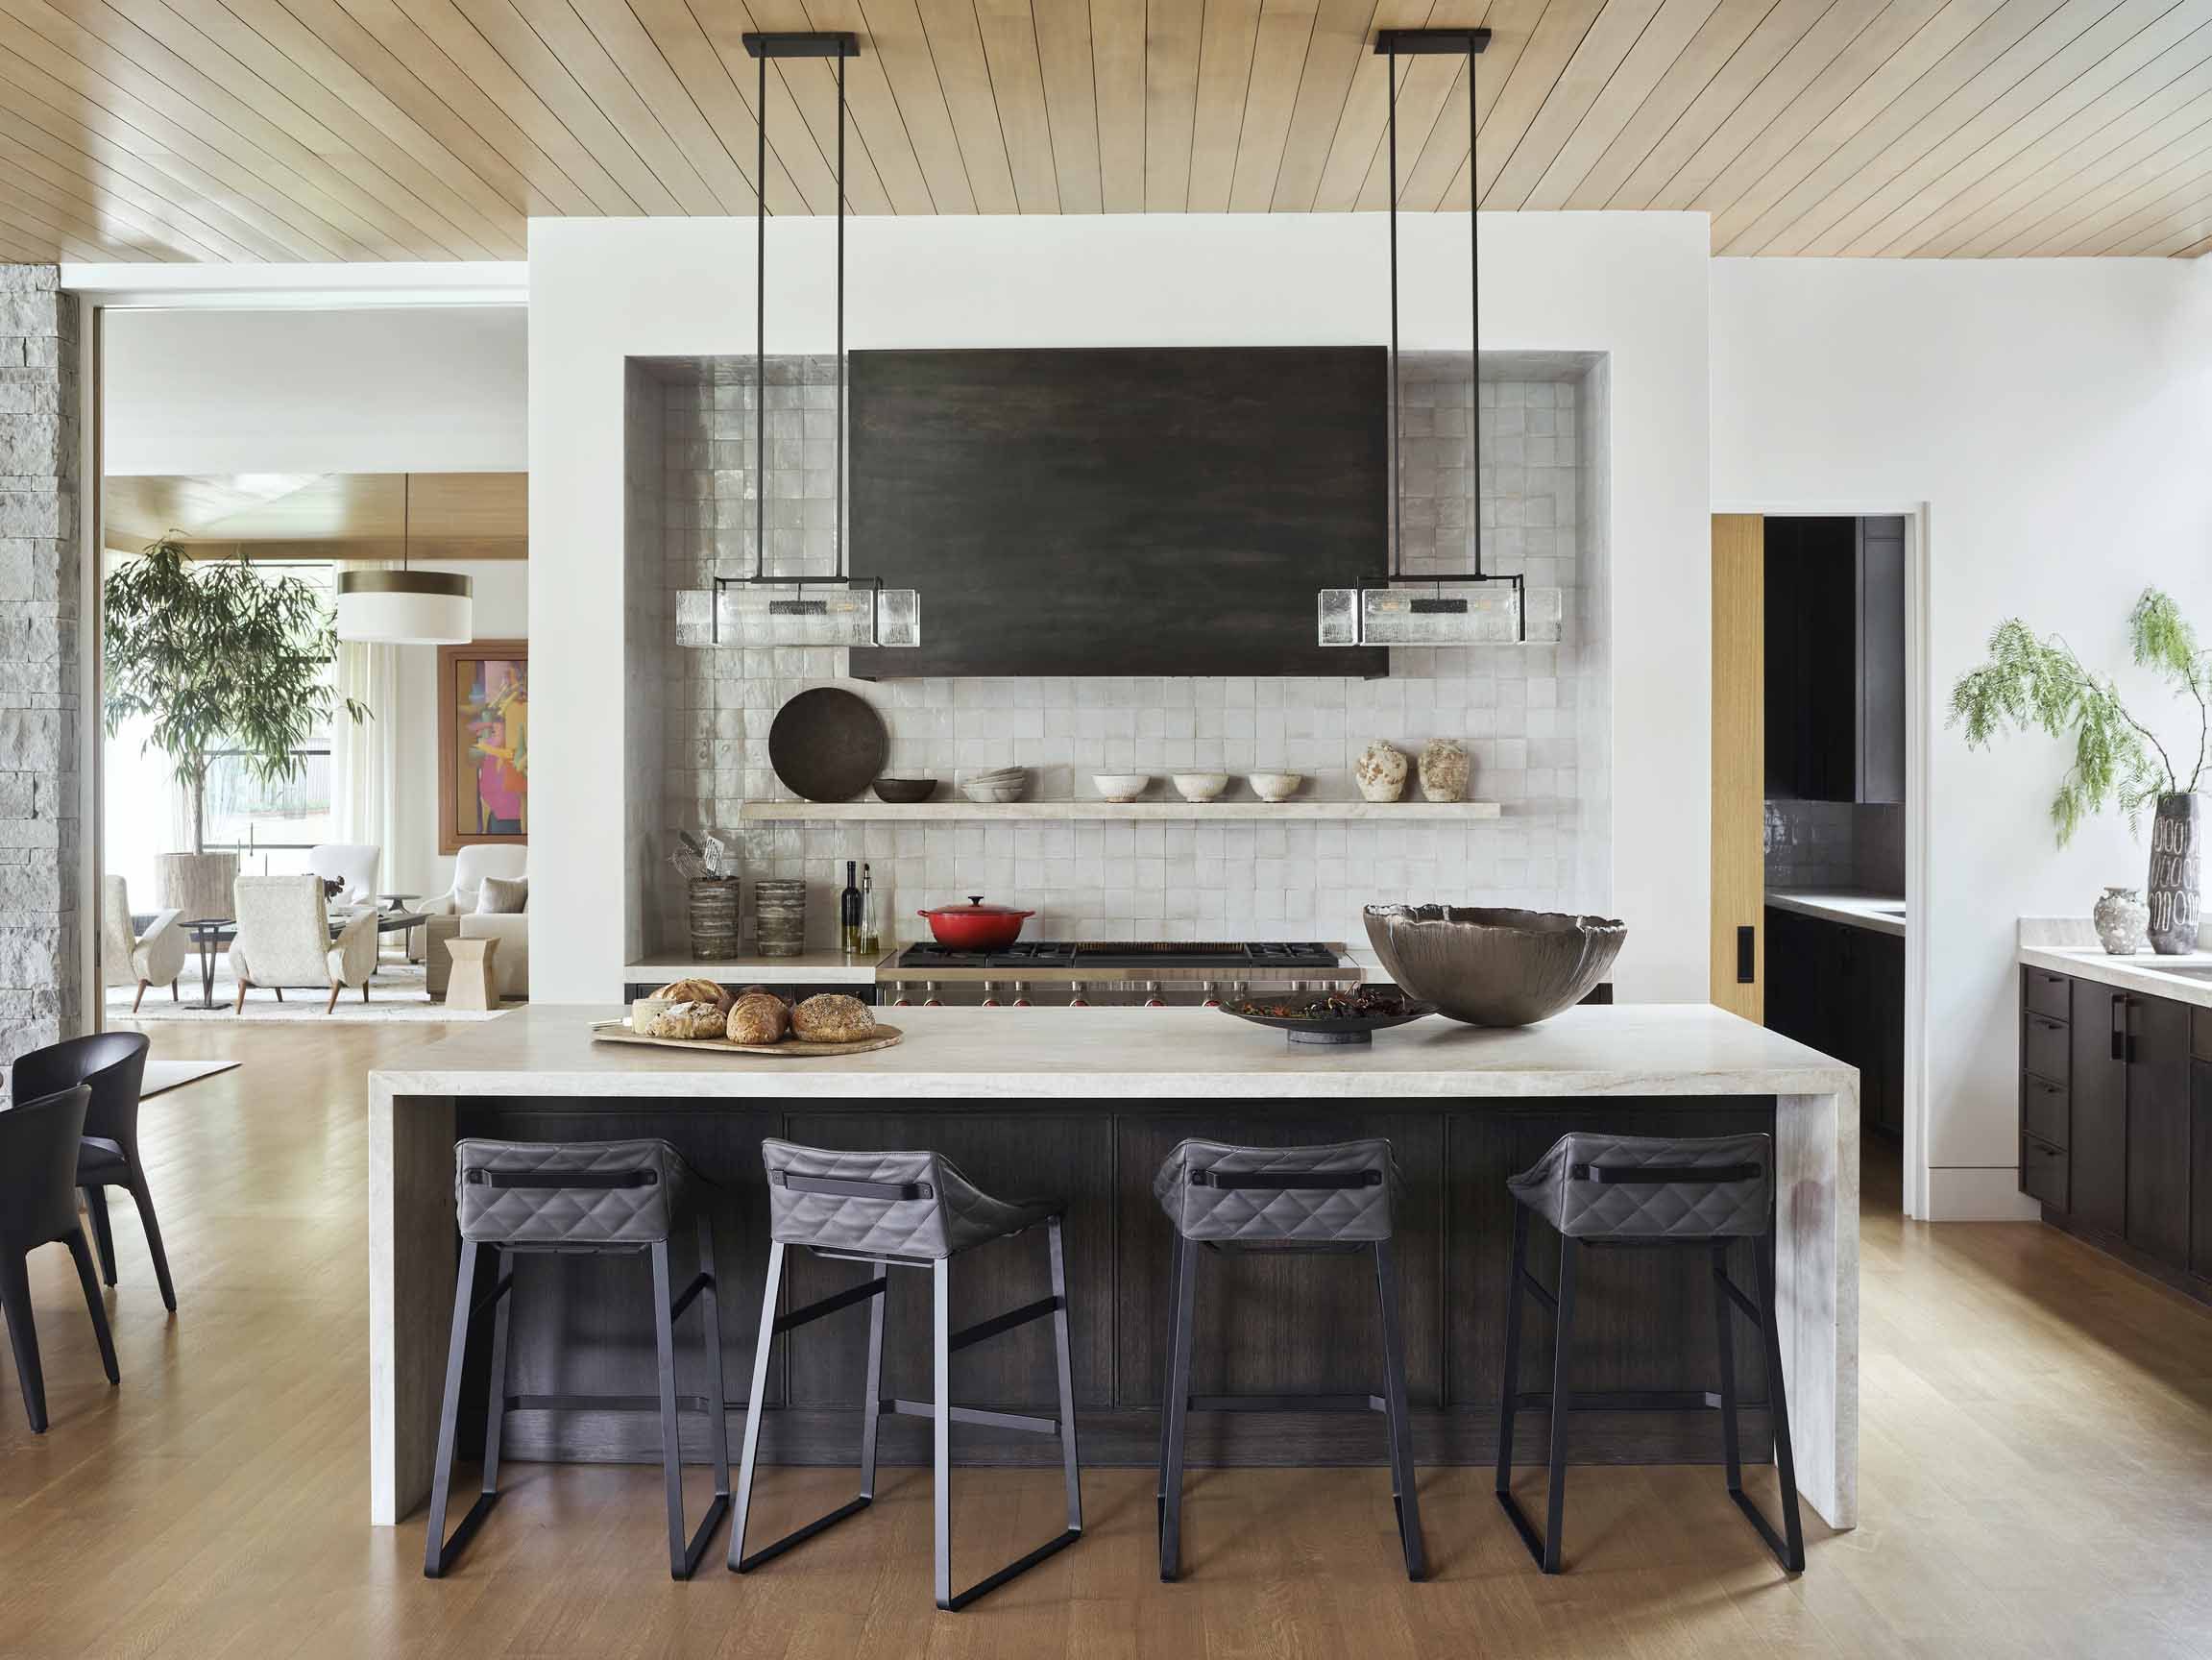 Best Kitchen Backsplash Ideas 18   Tile Designs for Kitchens